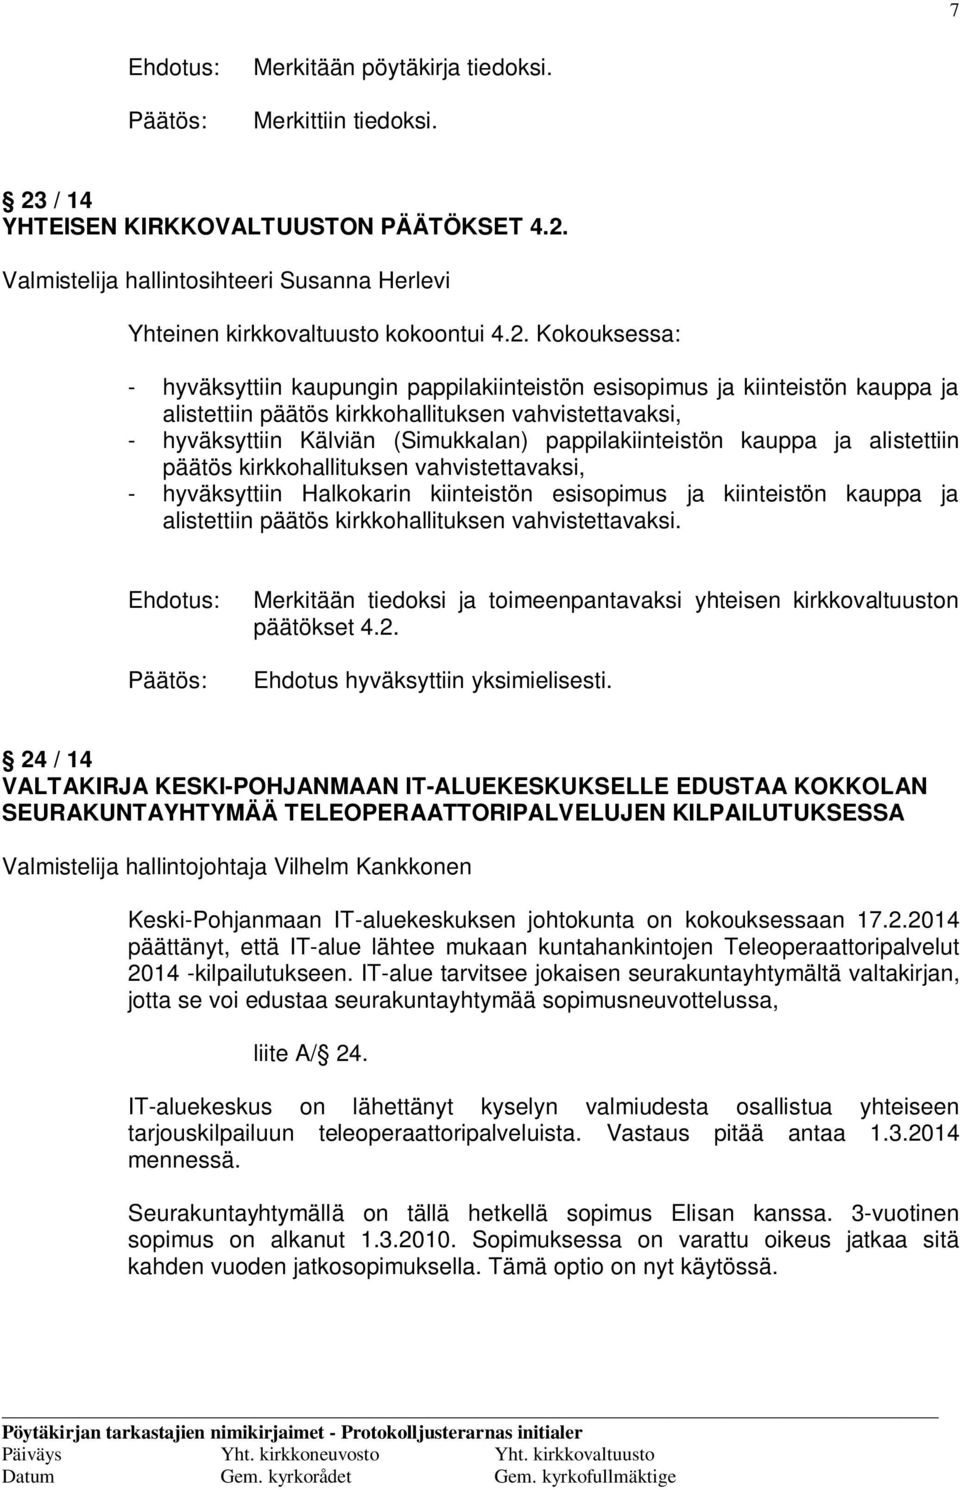 Valmistelija hallintosihteeri Susanna Herlevi Yhteinen kirkkovaltuusto kokoontui 4.2.